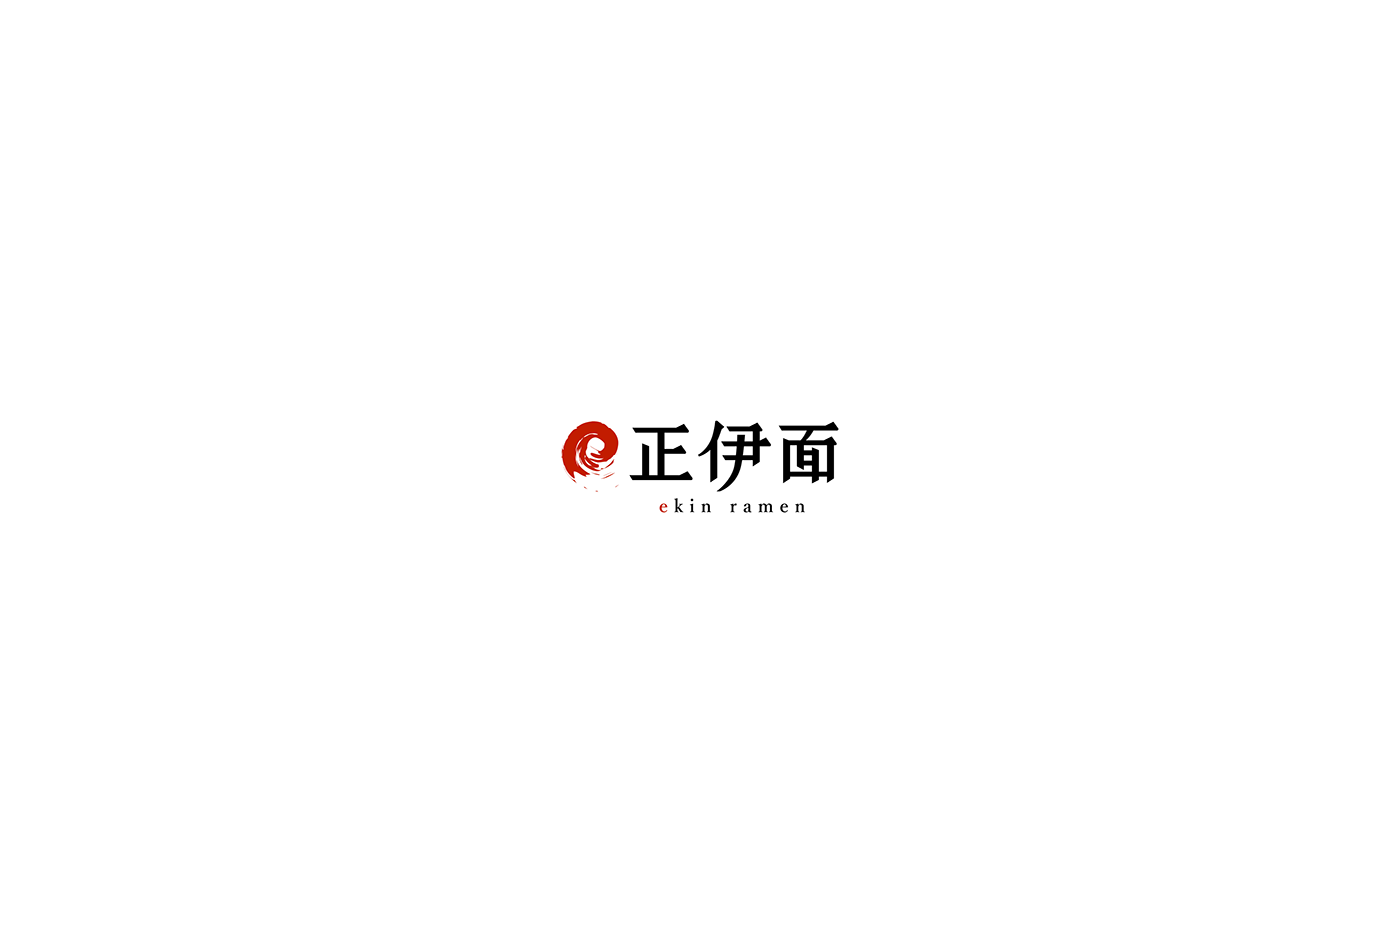 標準字 字體設計 中文 chinese letter typography   Logotype logo branding  font